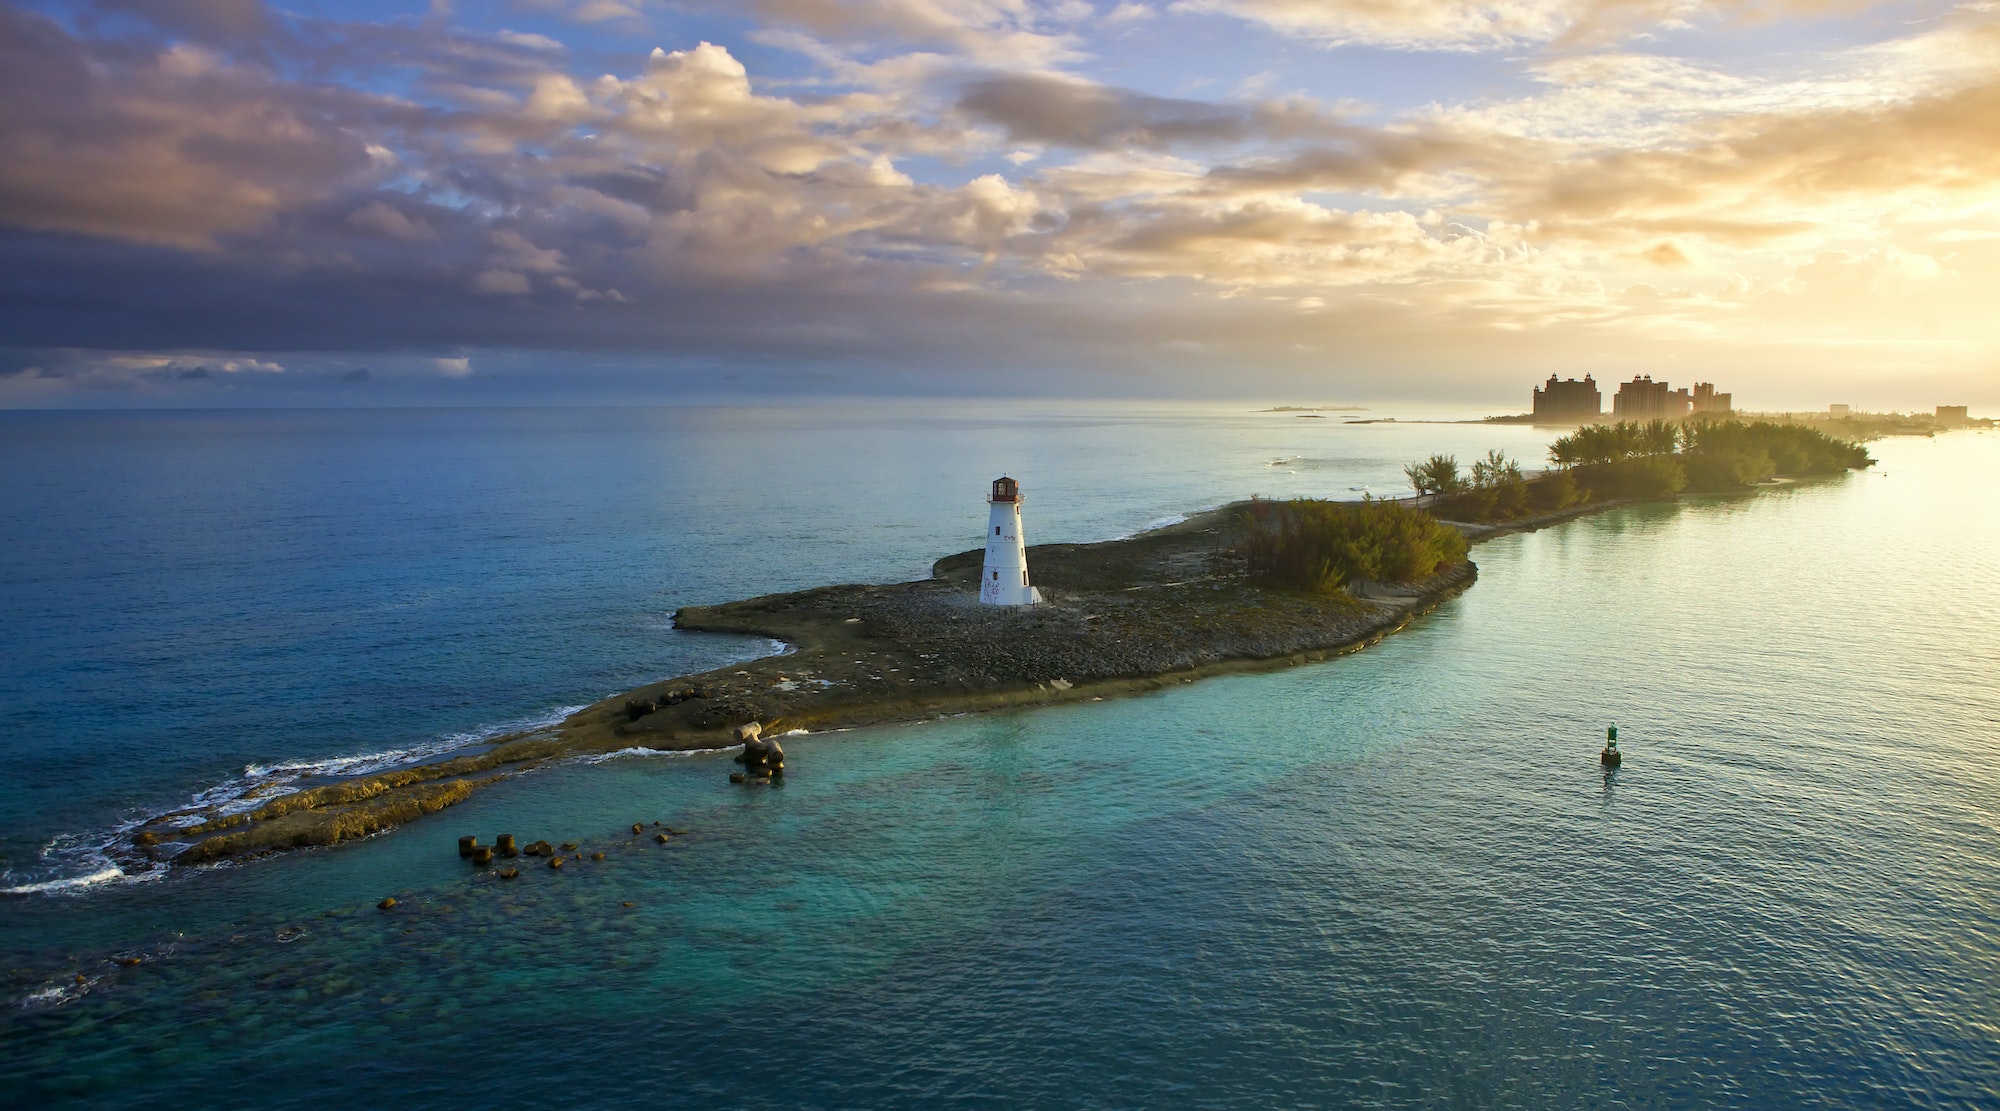 nassau, bahamas at dawn